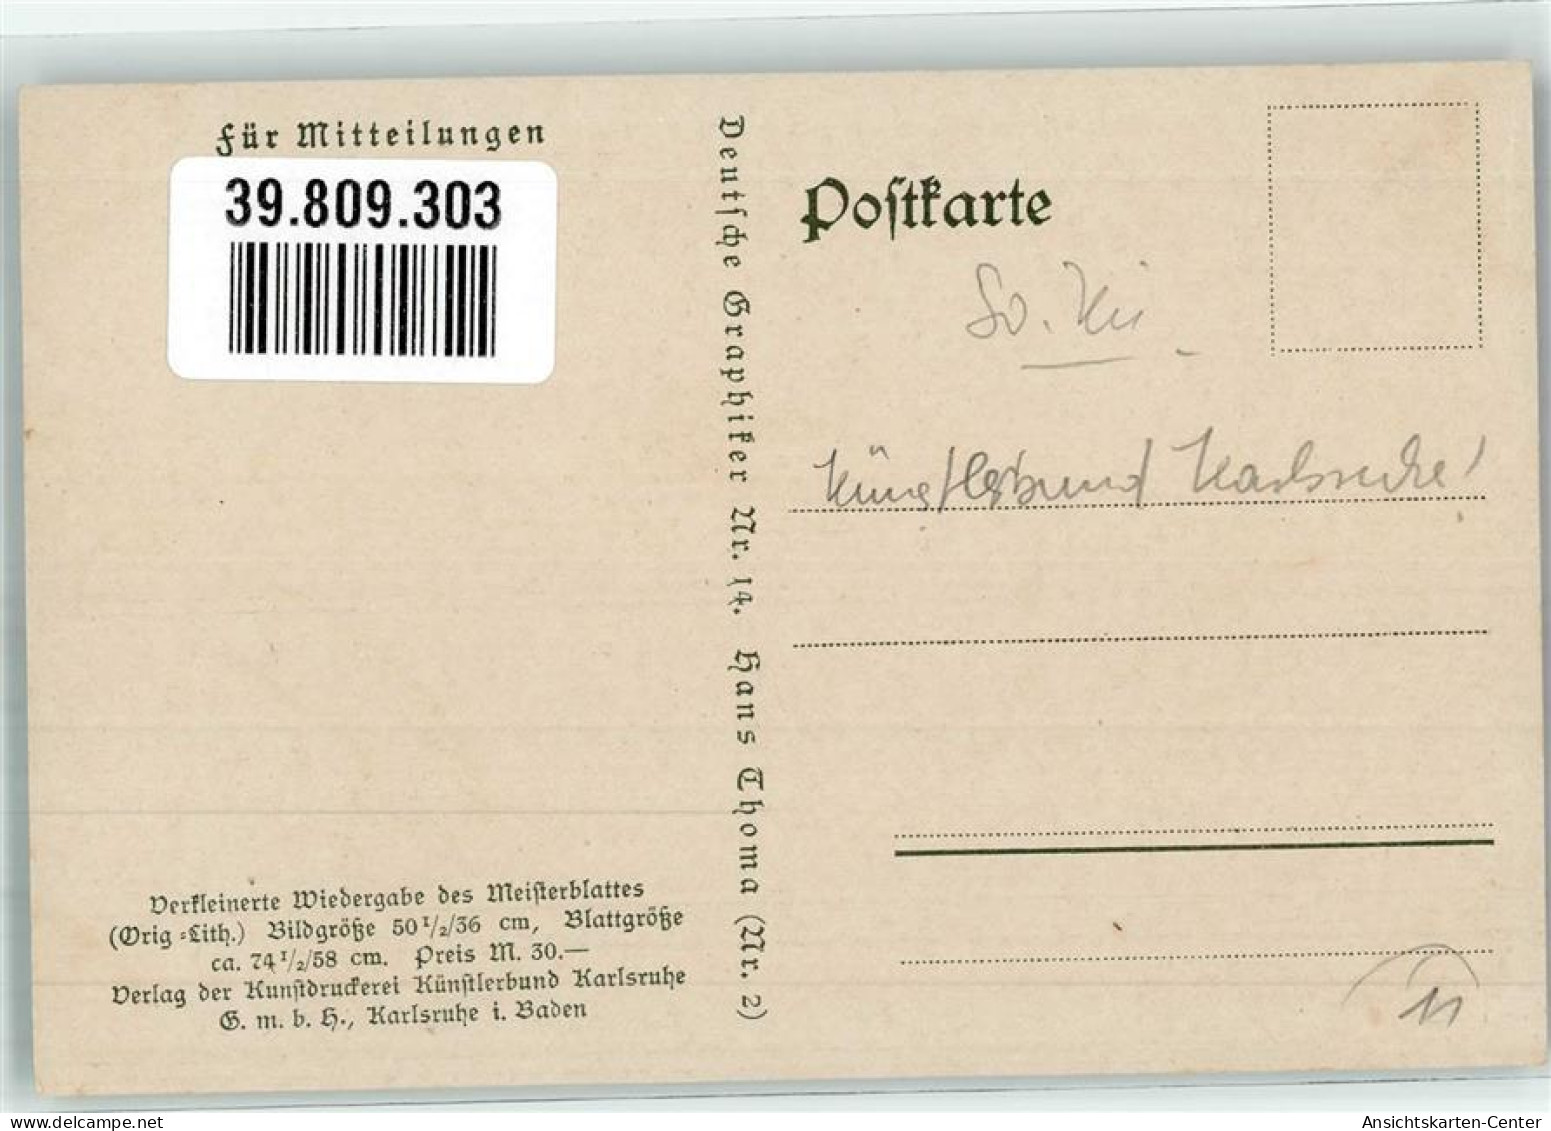 39809303 - Feierabend Deutsche Graphieker Nr. 14 Verlag Kuenstlerbund Karlsruhe - Thoma, Hans